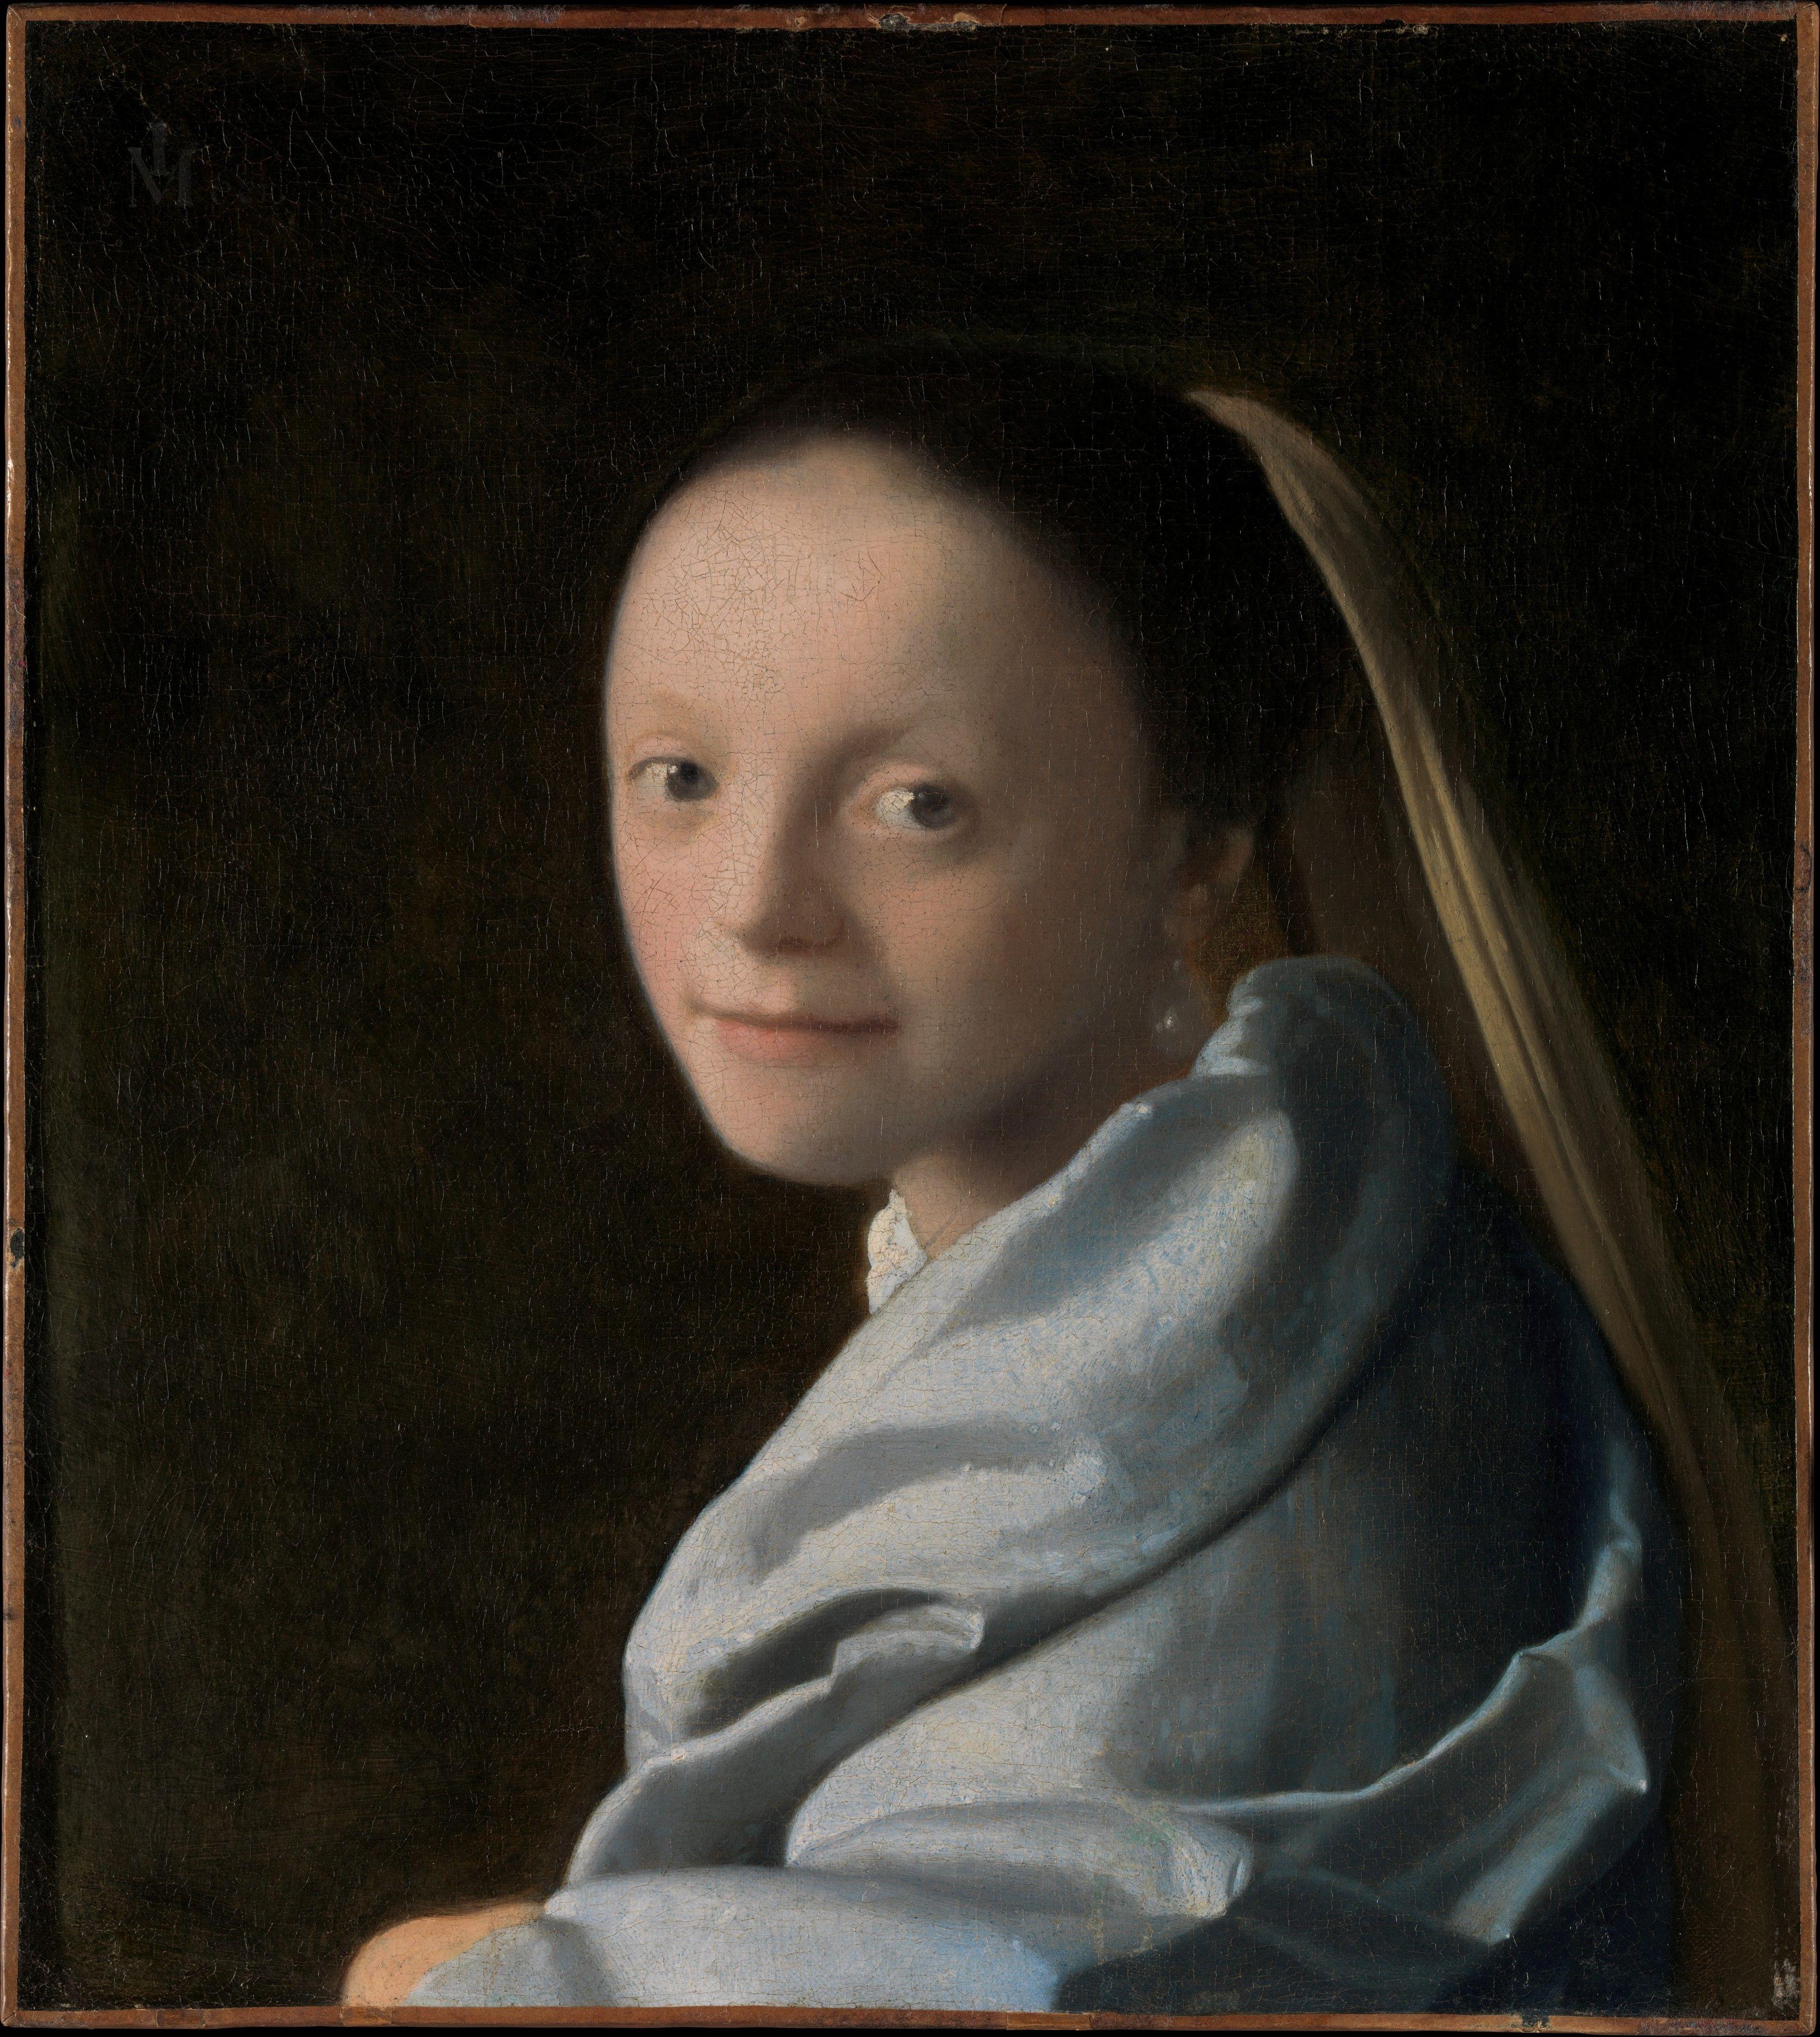 Viewing Vermeer on